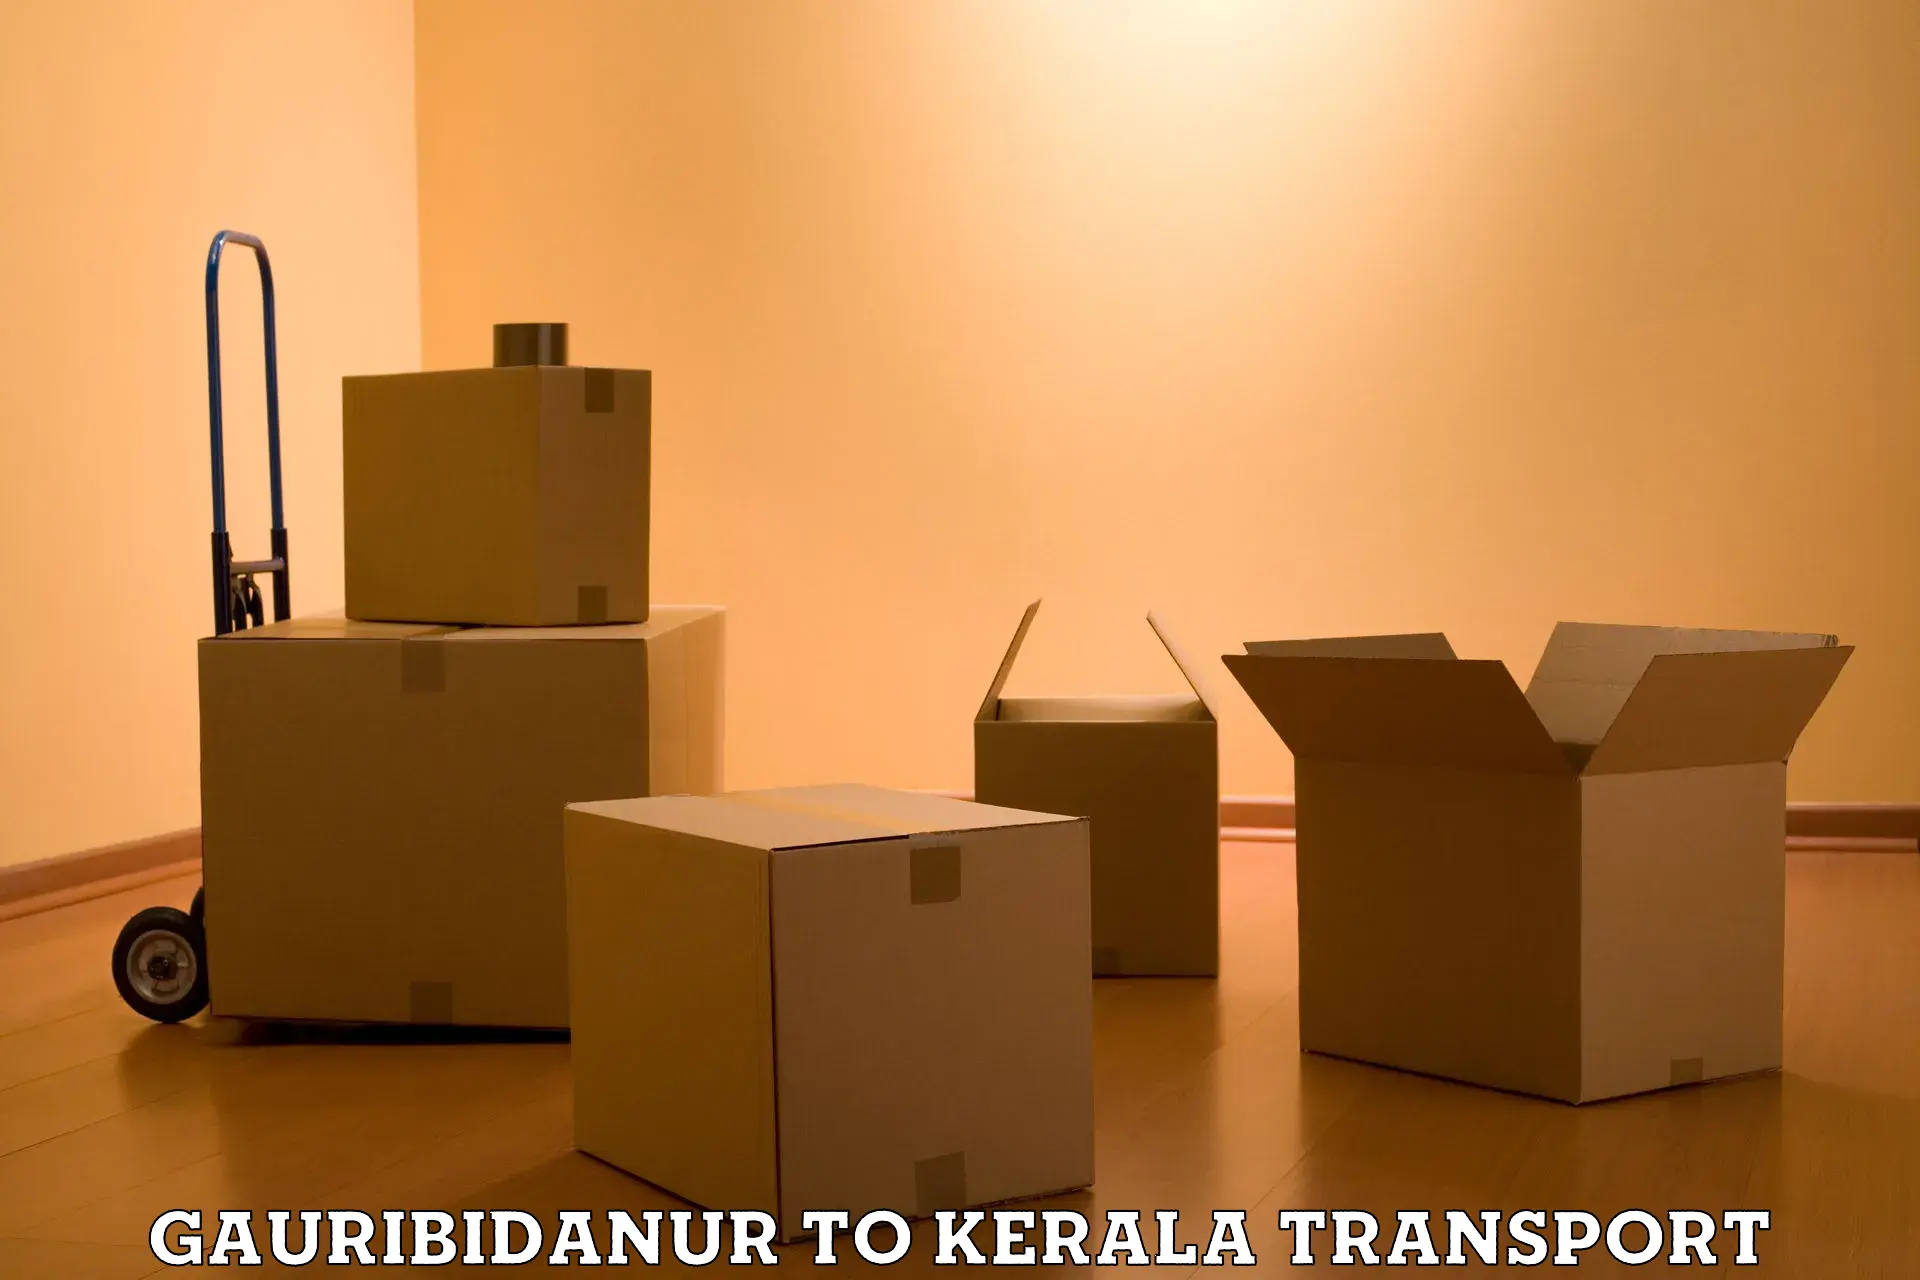 Online transport service Gauribidanur to Thiruvananthapuram